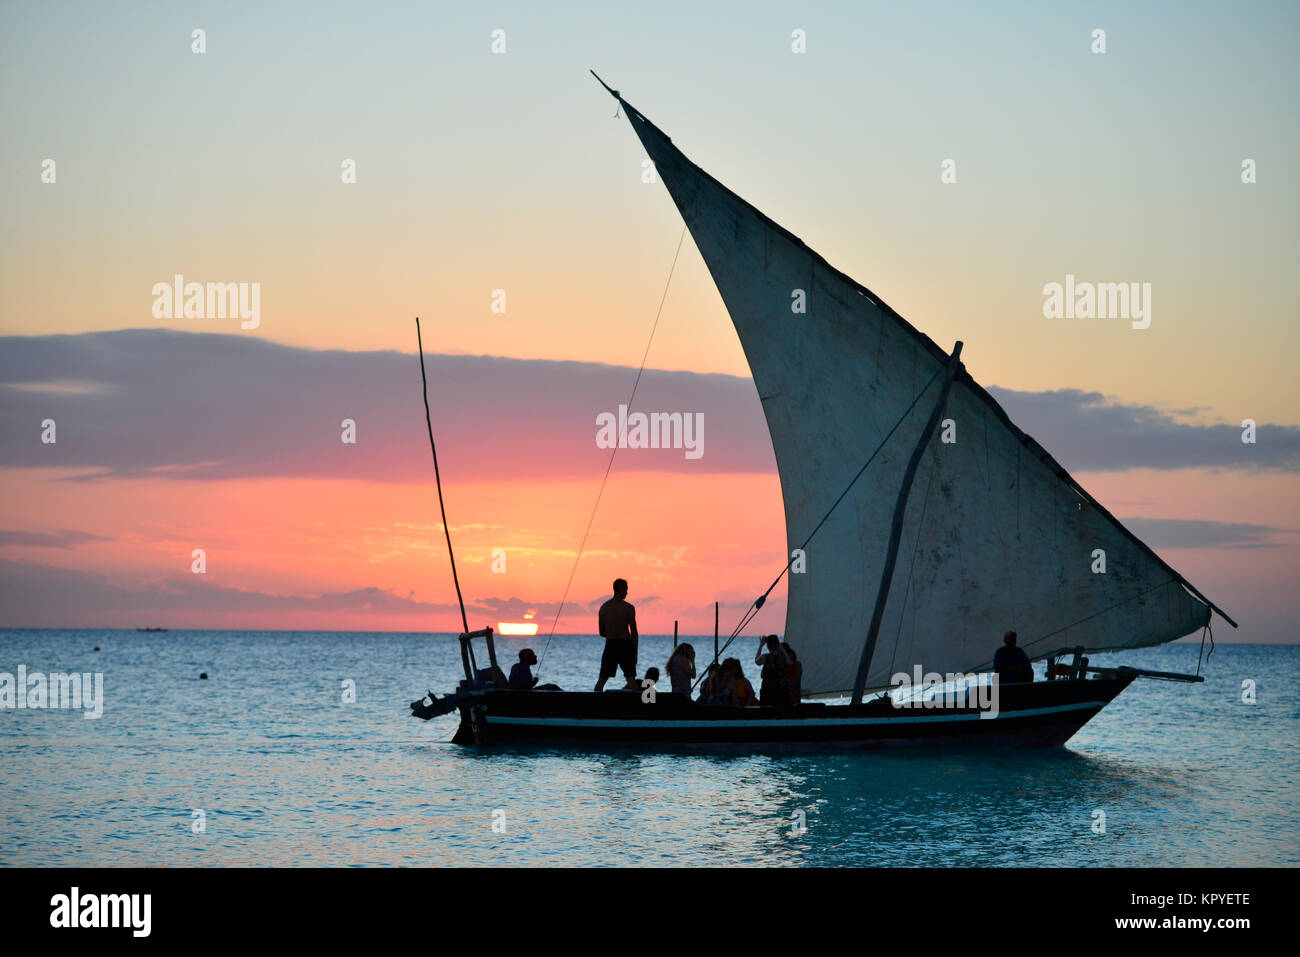 Zanzibar est un paradis de l'océan Indien que la plupart des gens peuvent se permettre de visiter pour paresseux vacances sur les plages chaudes. Coucher du soleil est un moment de beauté et de paix. Banque D'Images